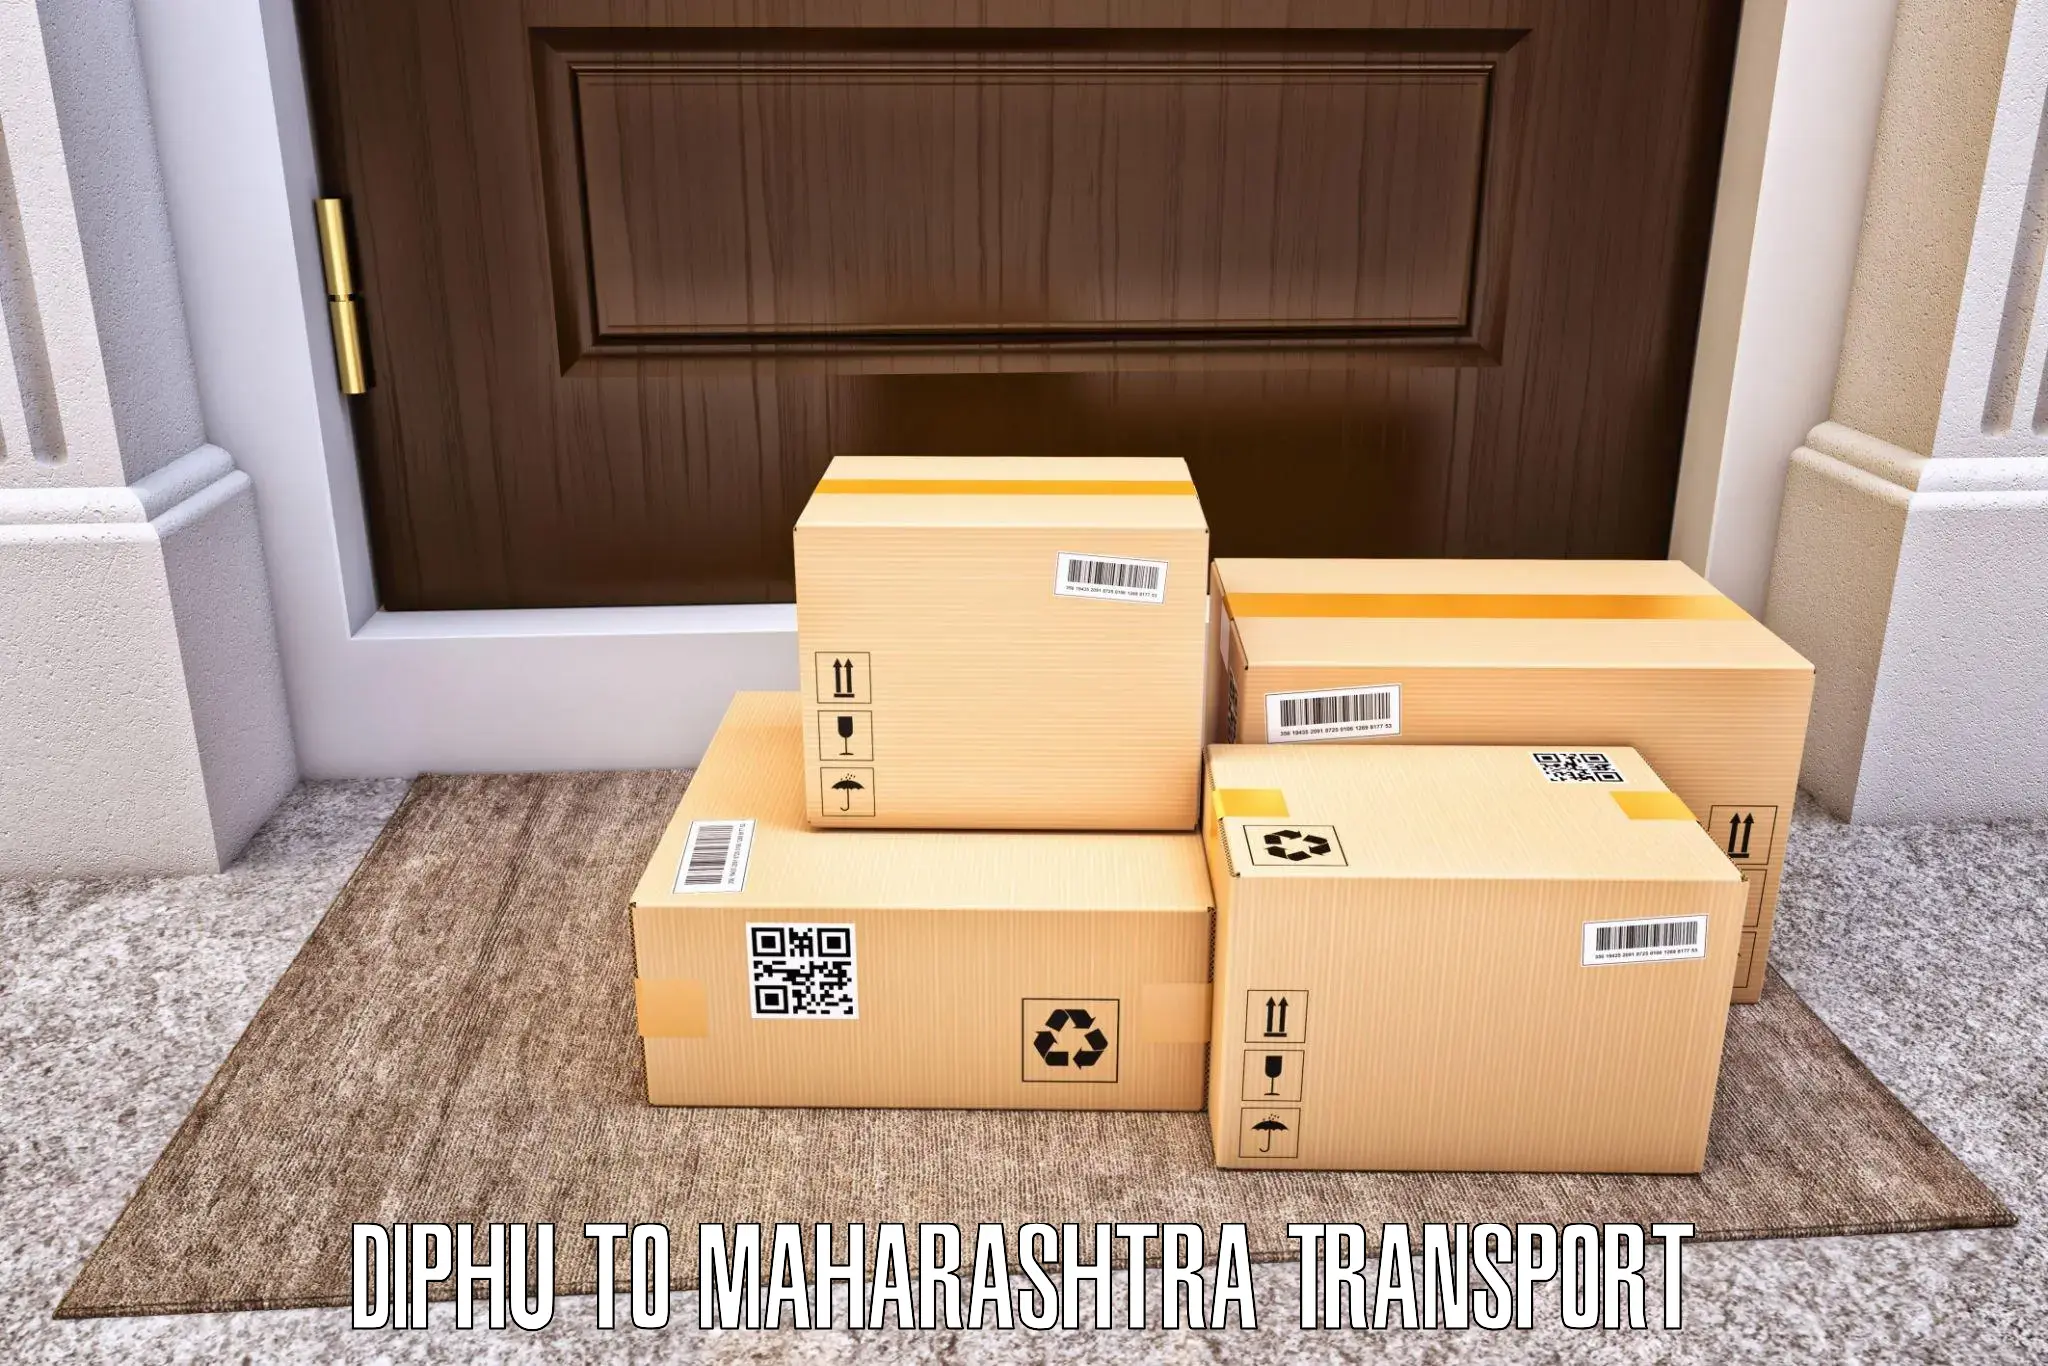 Goods transport services Diphu to Pandharkawada